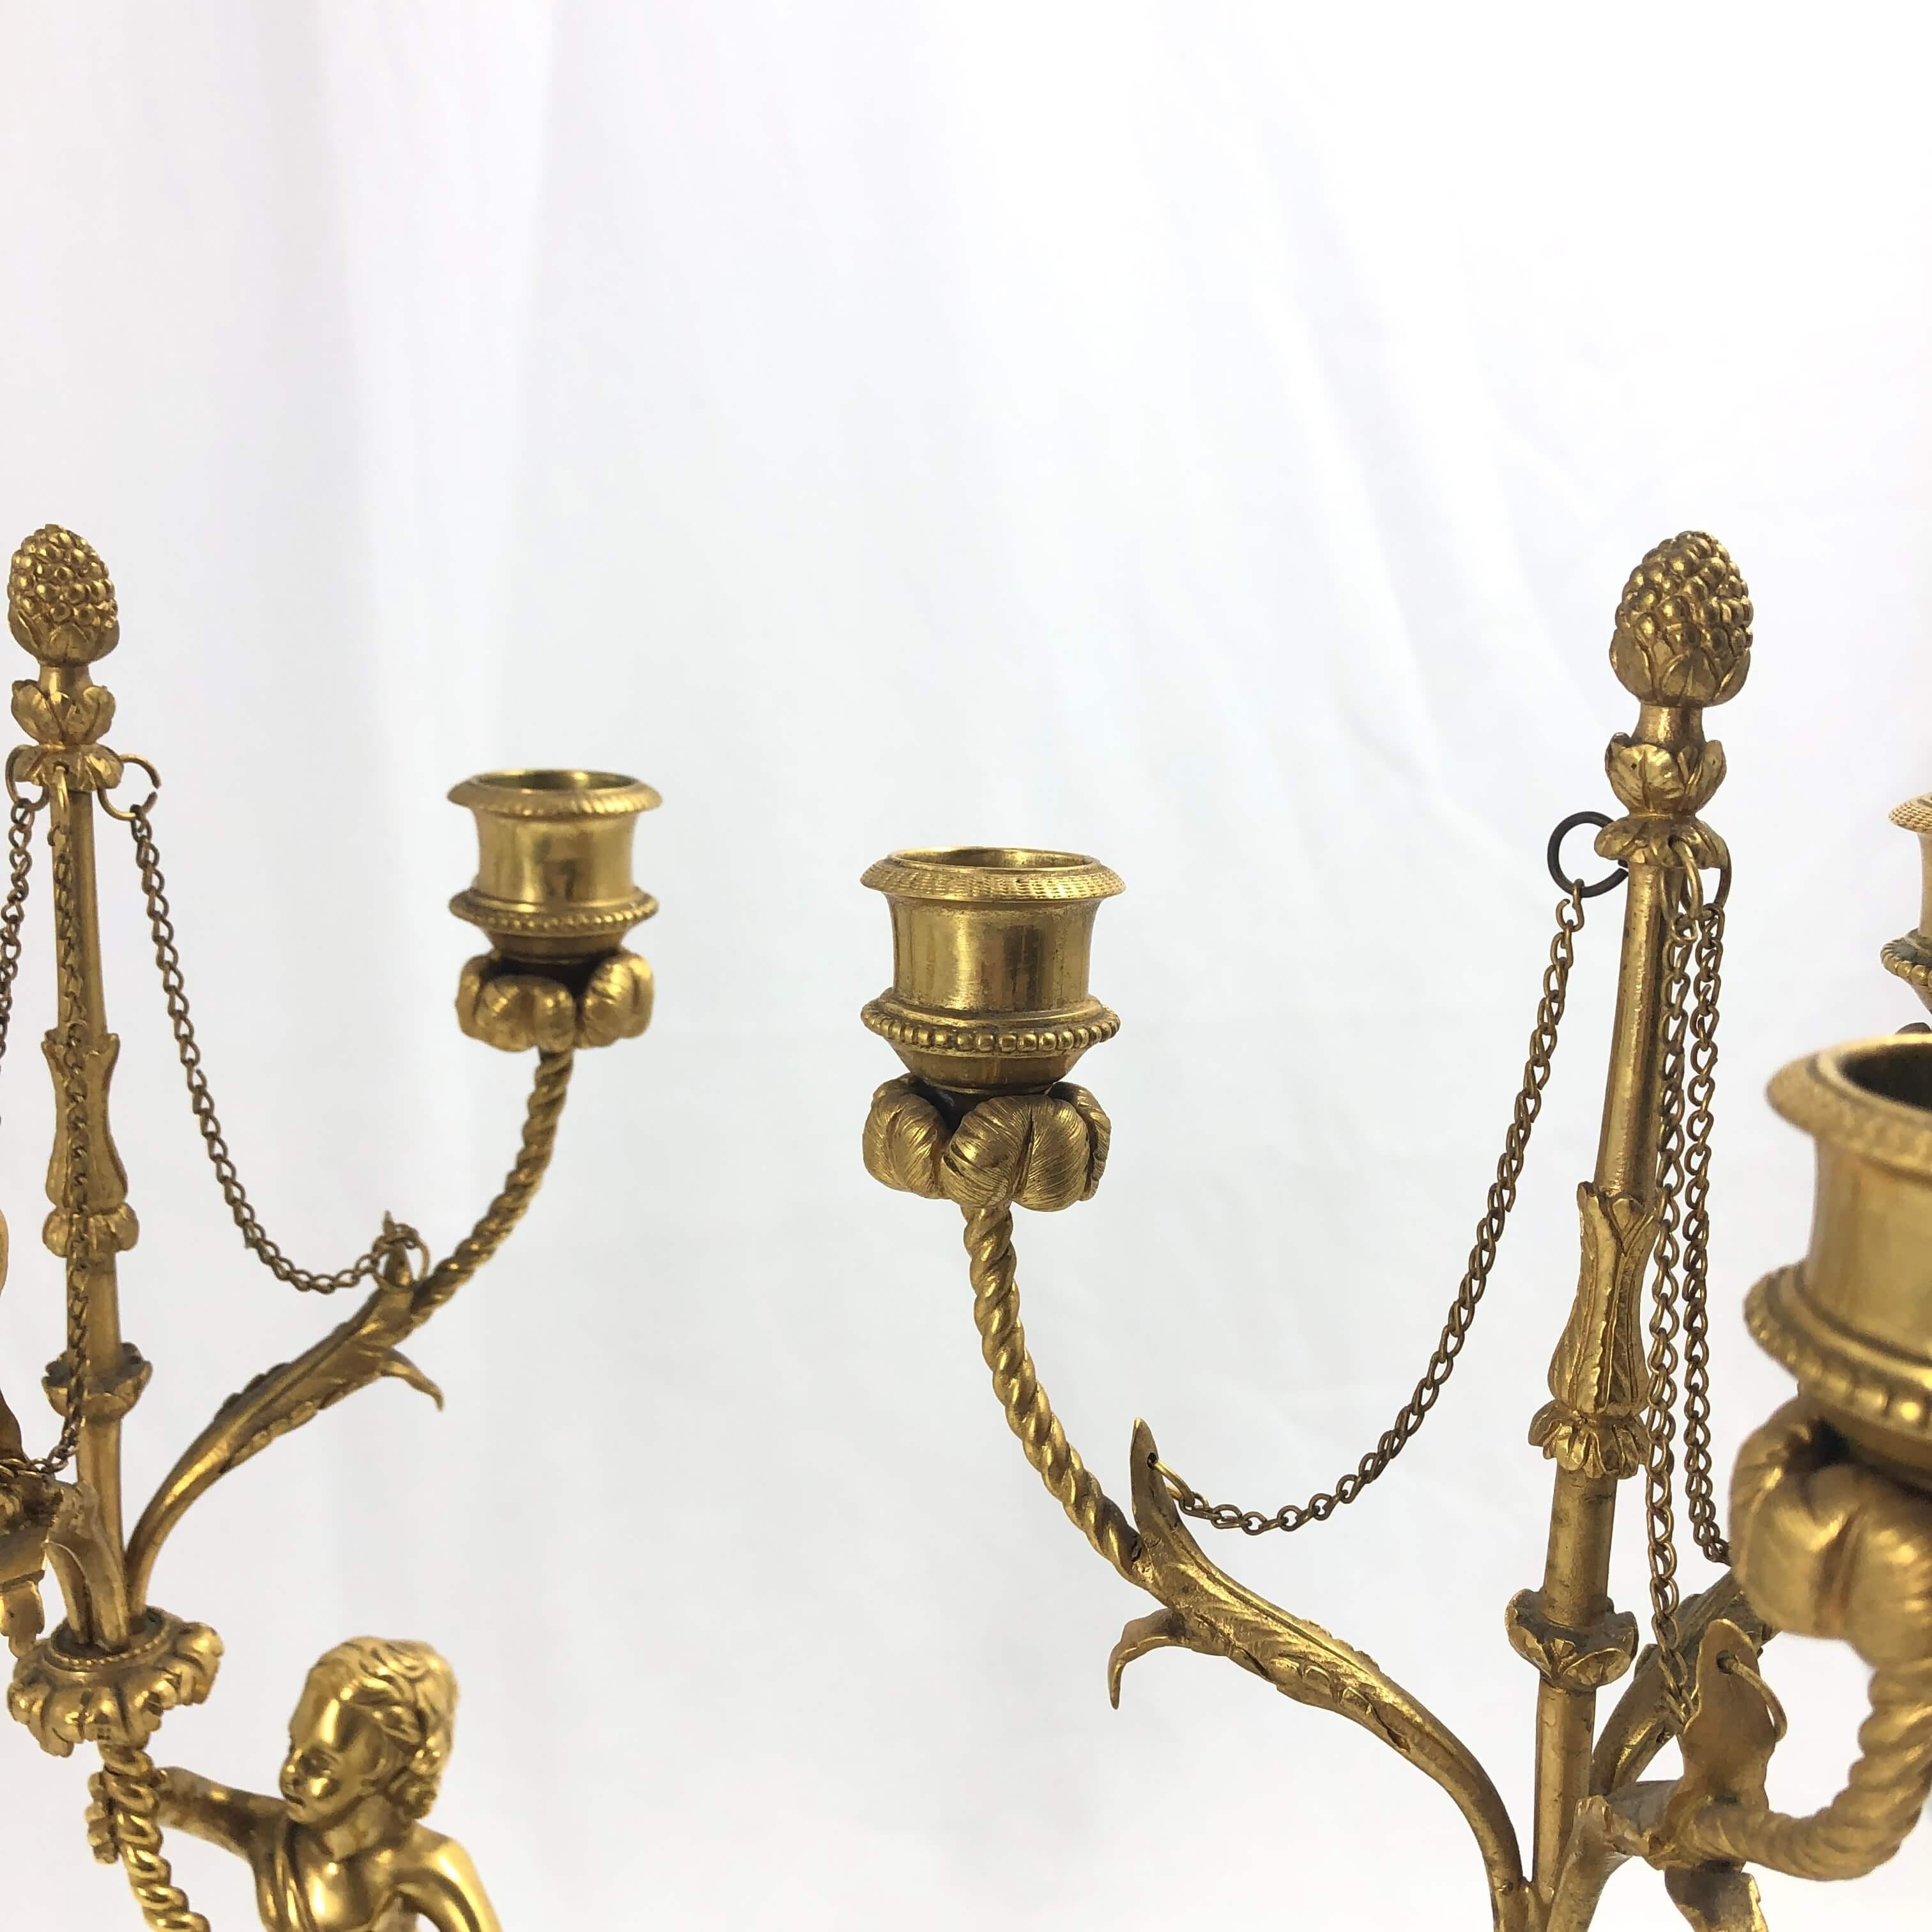 Paire de candélabres français Louis XVI en bronze doré, chaque putti tenant un bras de lumière à trois lumières avec des motifs floraux, des terminaisons en forme de glands, et reposant sur une base en marbre avec une monture en bronze en forme de